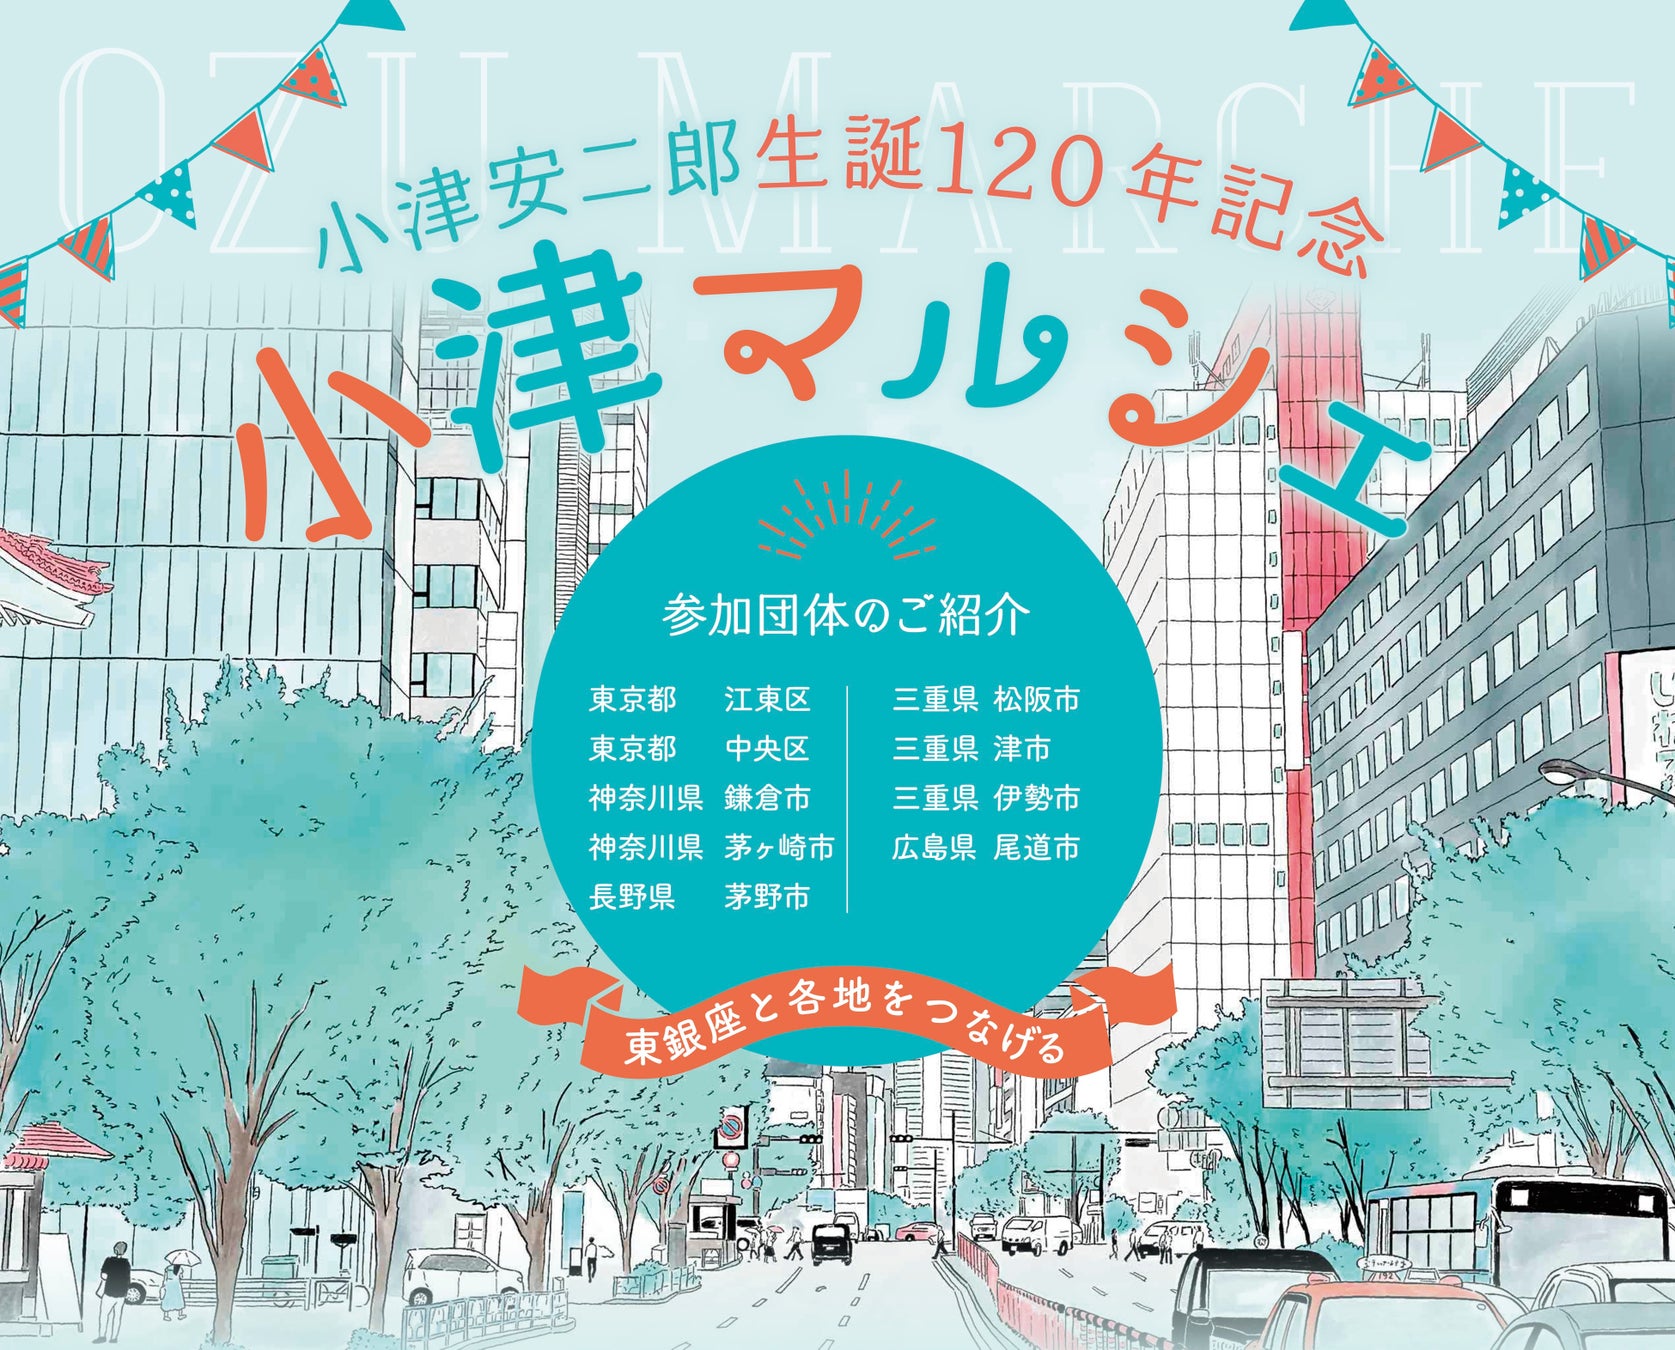 12/12 東京銀座の松竹スクエアで開催される 『小津安二郎 生誕120年記念 「小津マルシェ」』に「茅野市～蓼科高原～」が出店します